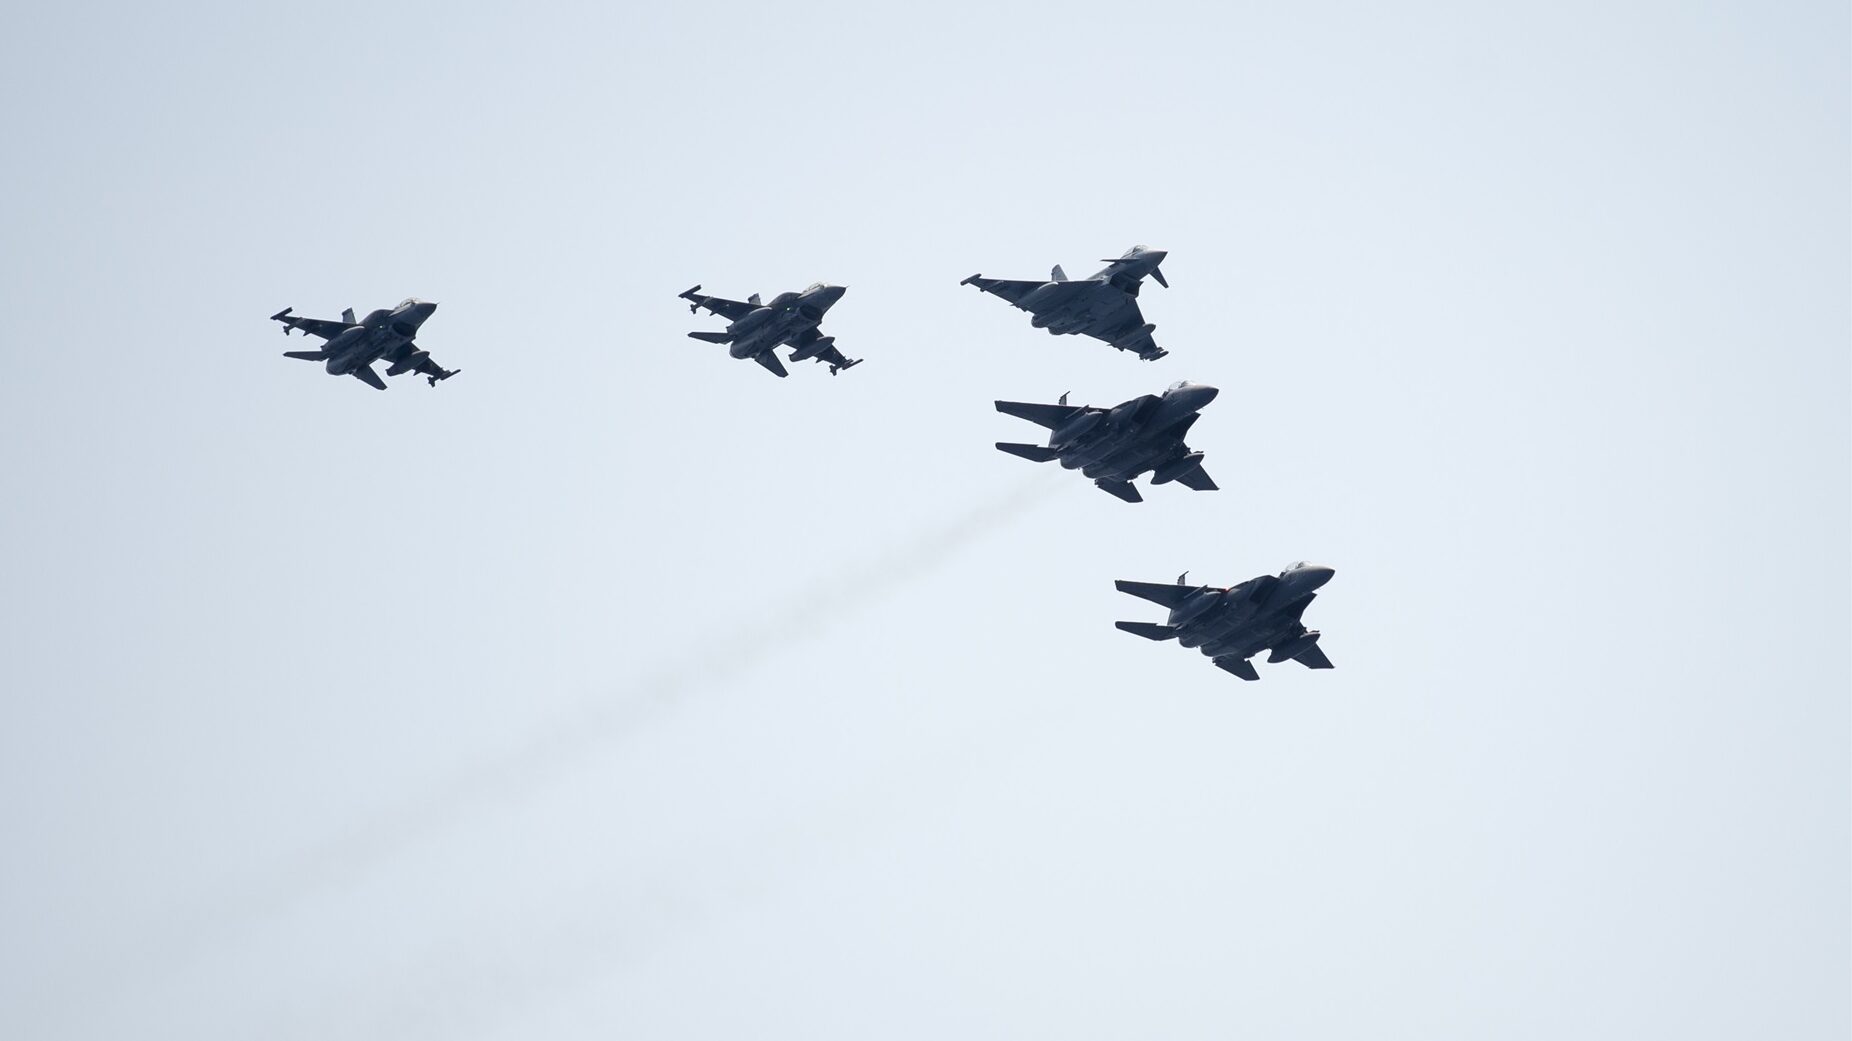 Eurofighters modelo Typhoon sobrevuelan los cielos